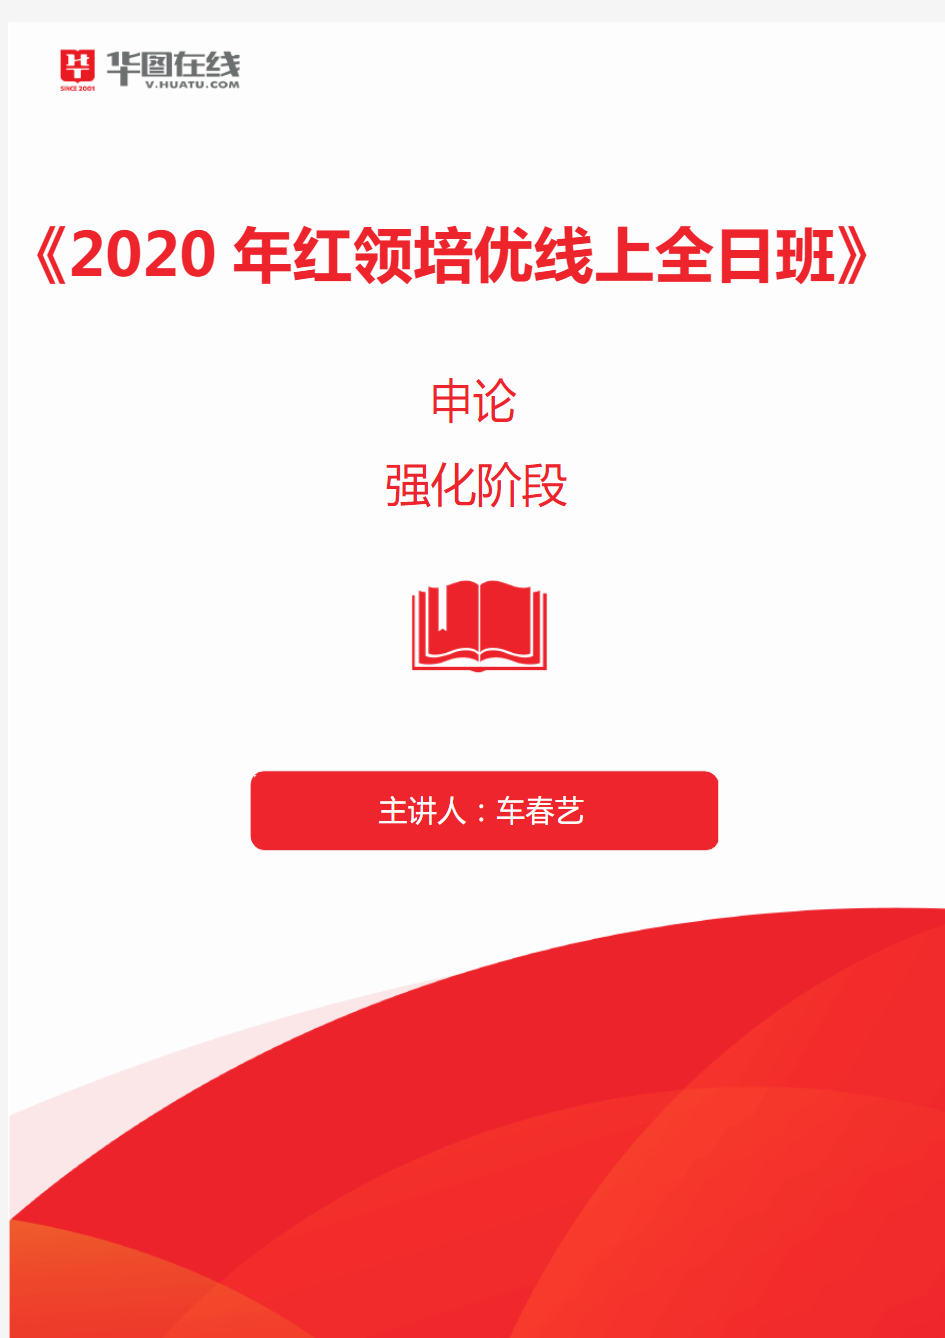 2020年红领培优线上全日班申论笔记1_1583300456